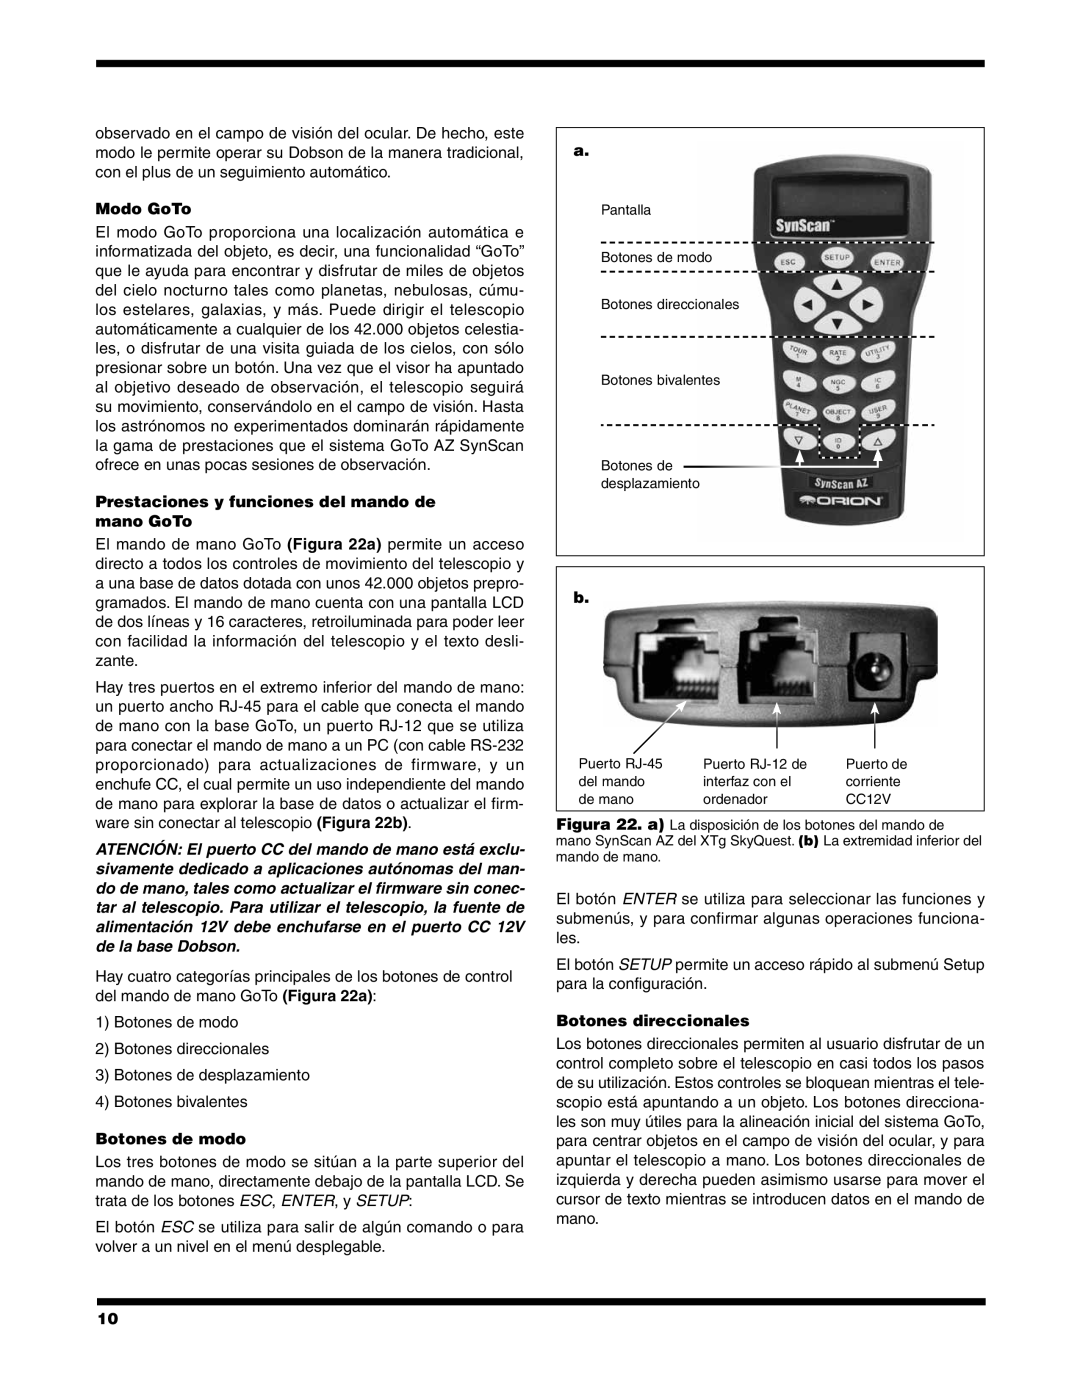 Orion #8948 XT8G manual Modo GoTo, Prestaciones y funciones del mando de mano GoTo, Botones de modo, Botones direccionales 